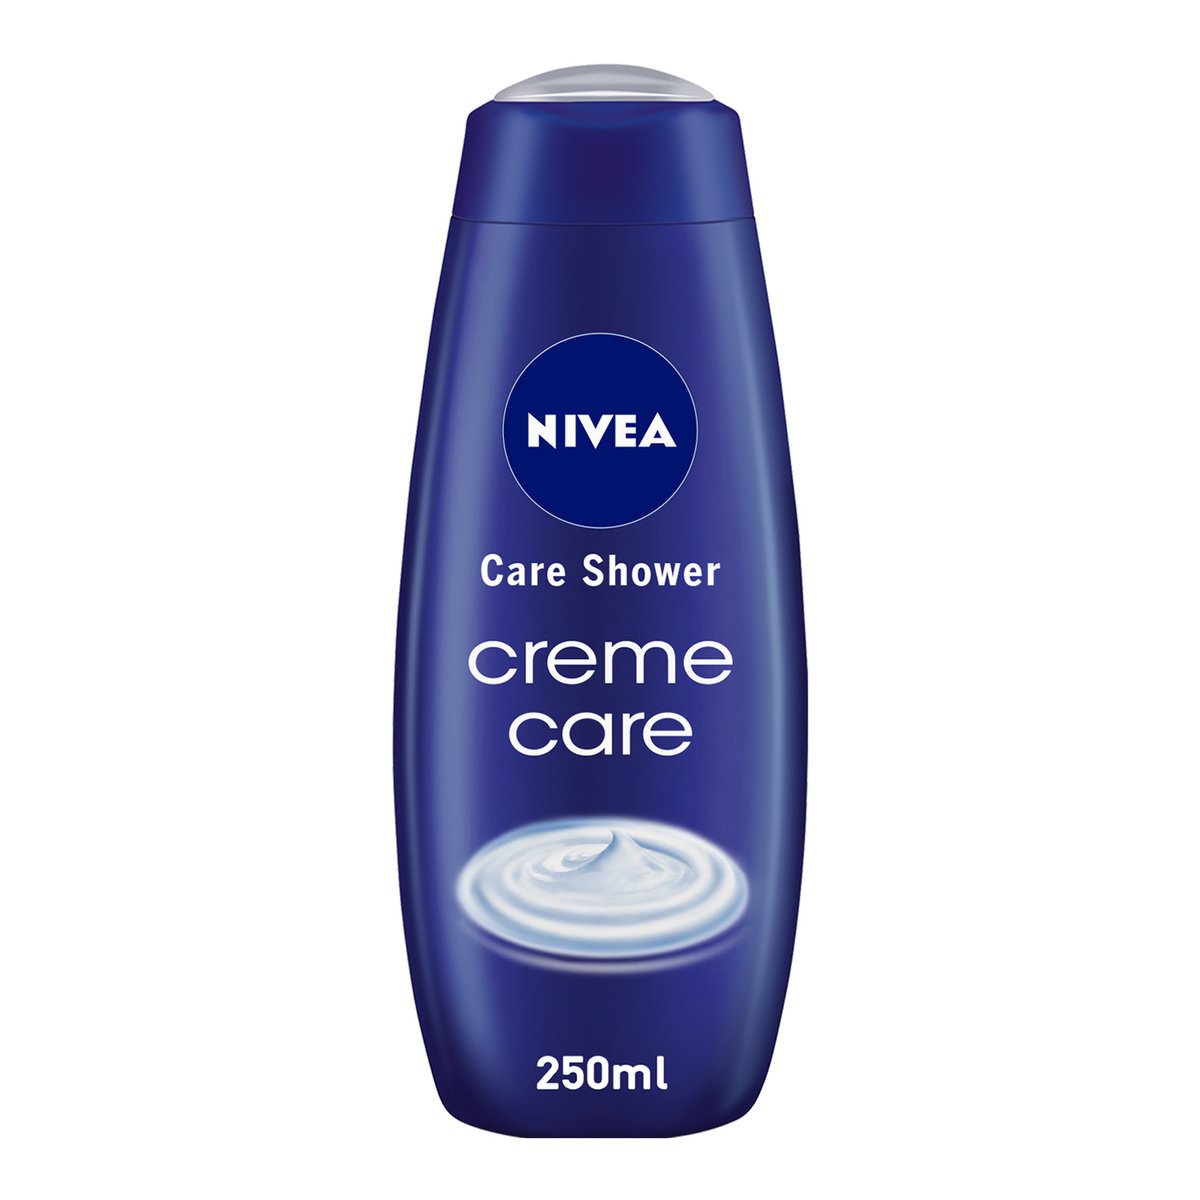 Nivea Creme Care Cream Shower 250 ml